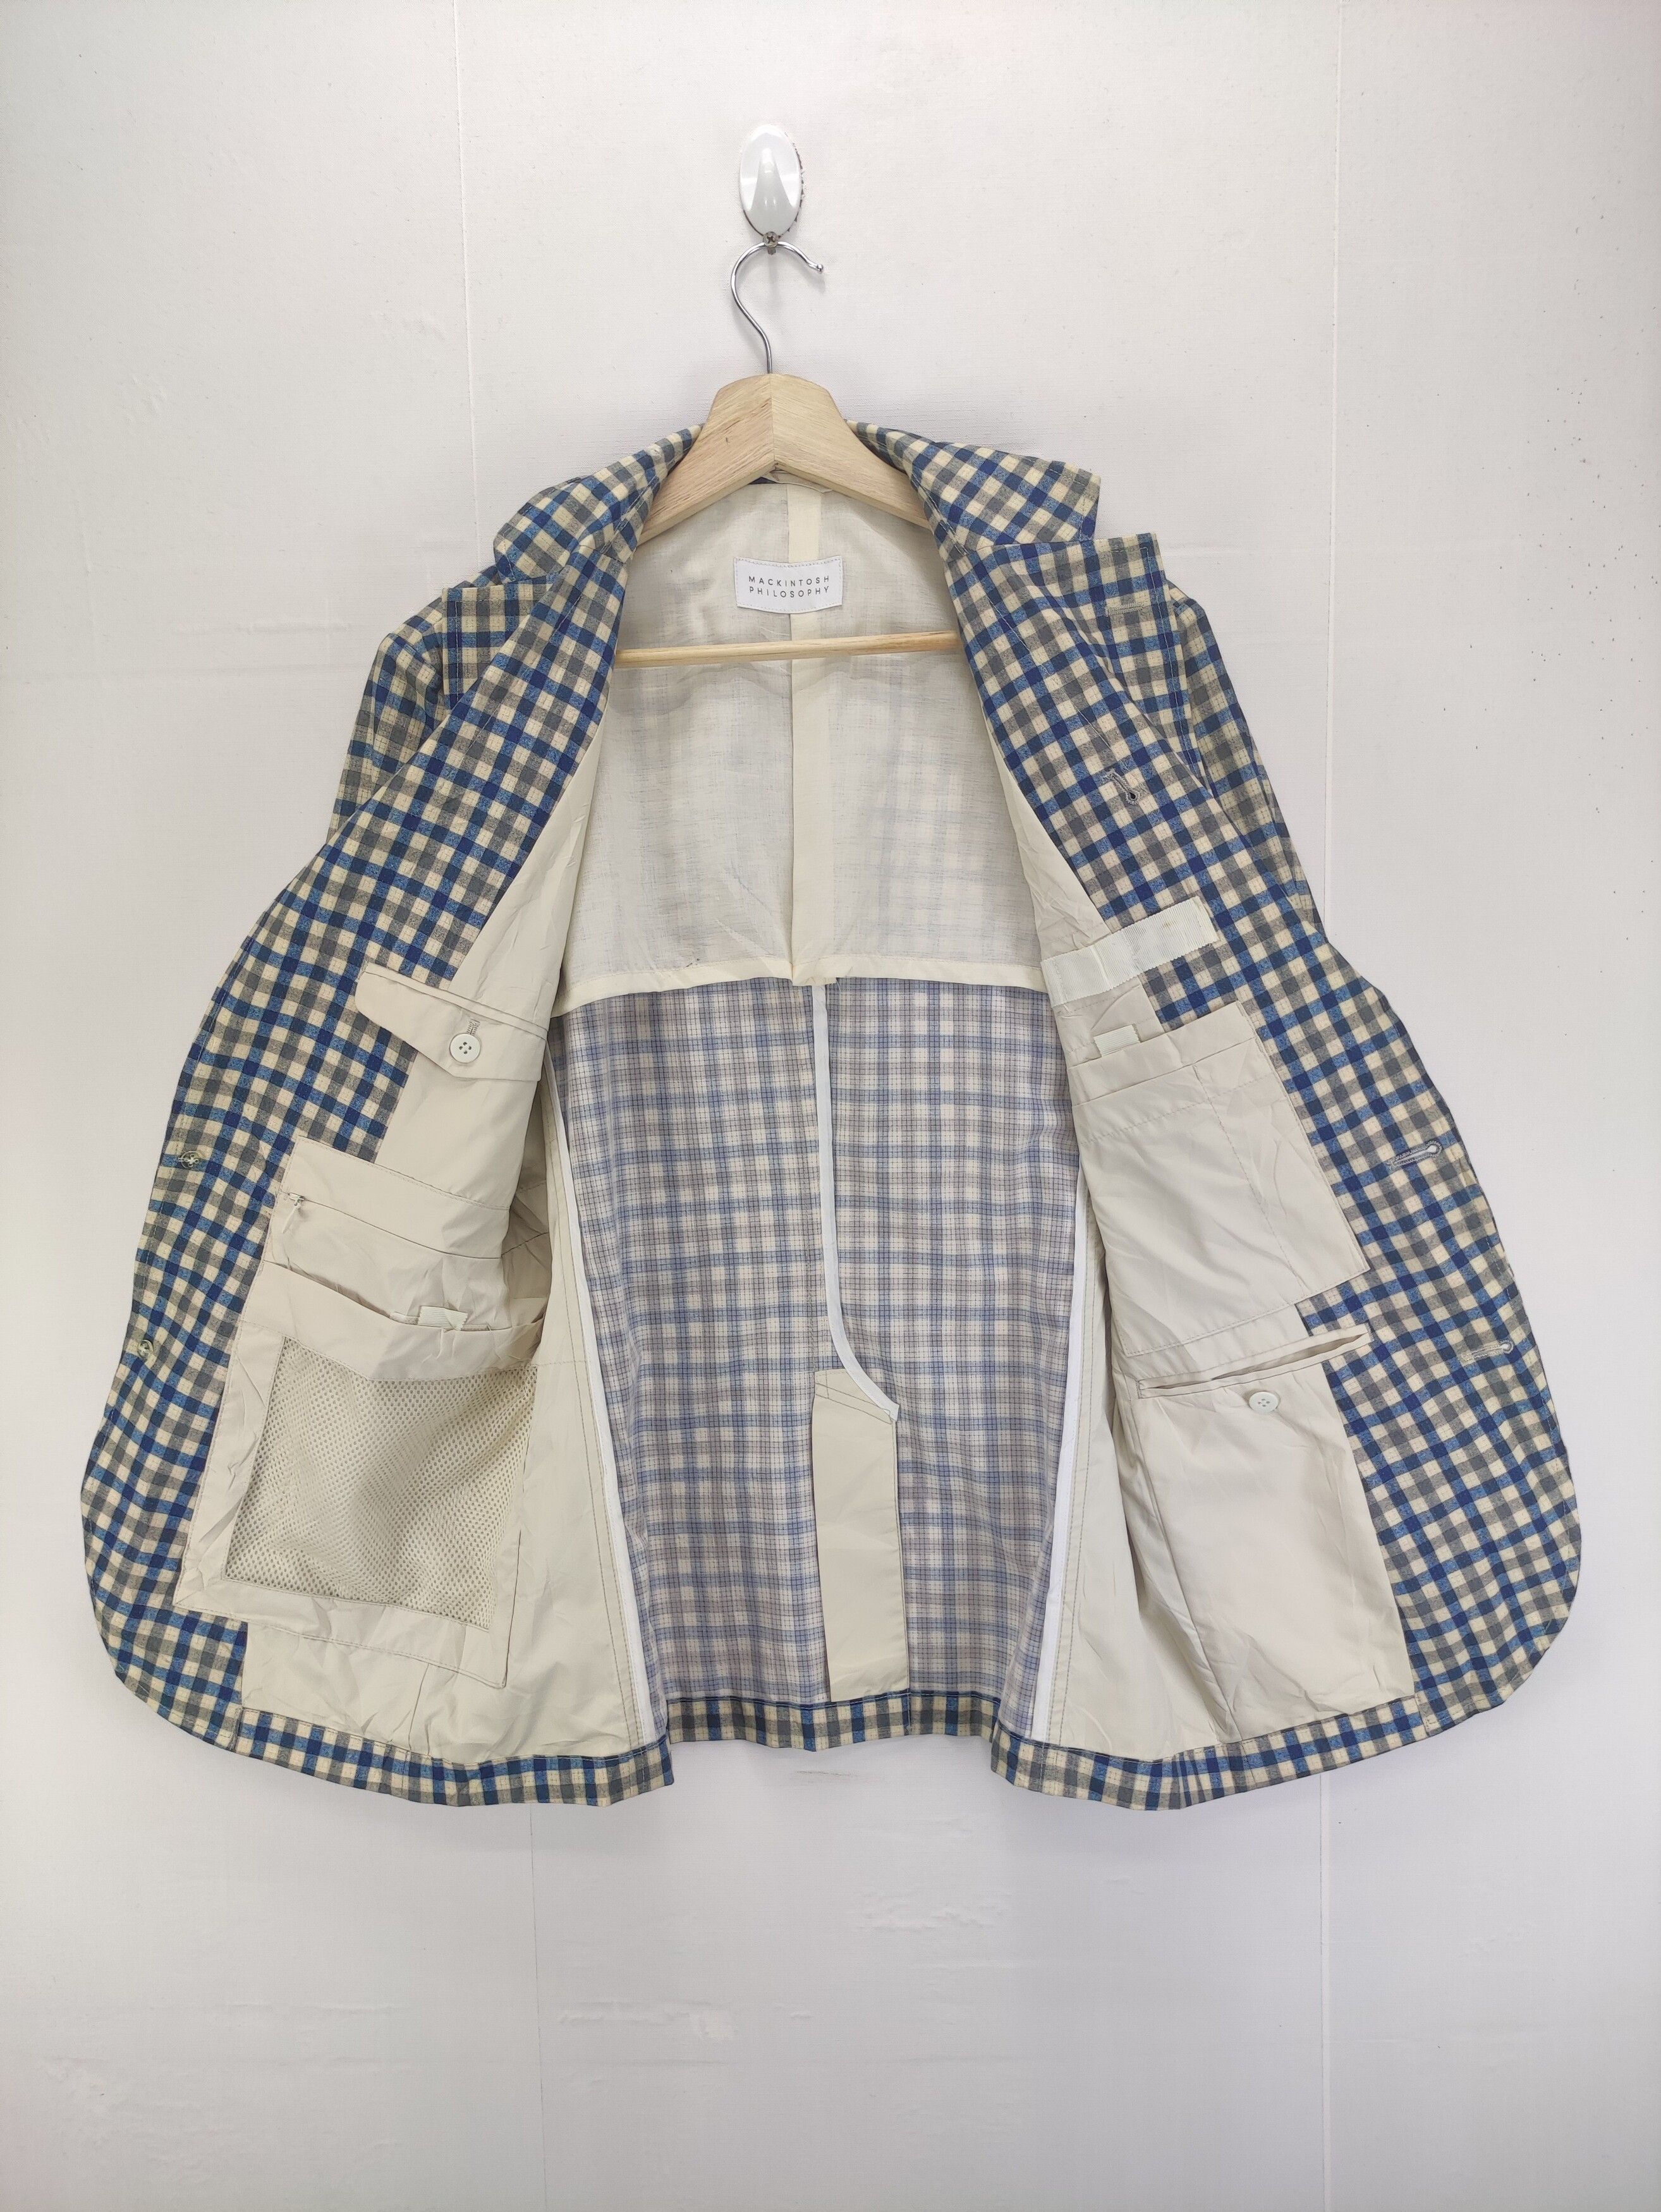 Mackintosh Vintage Mackintosh Philosophy Coat Jacket Checkered Size US S / EU 44-46 / 1 - 4 Thumbnail